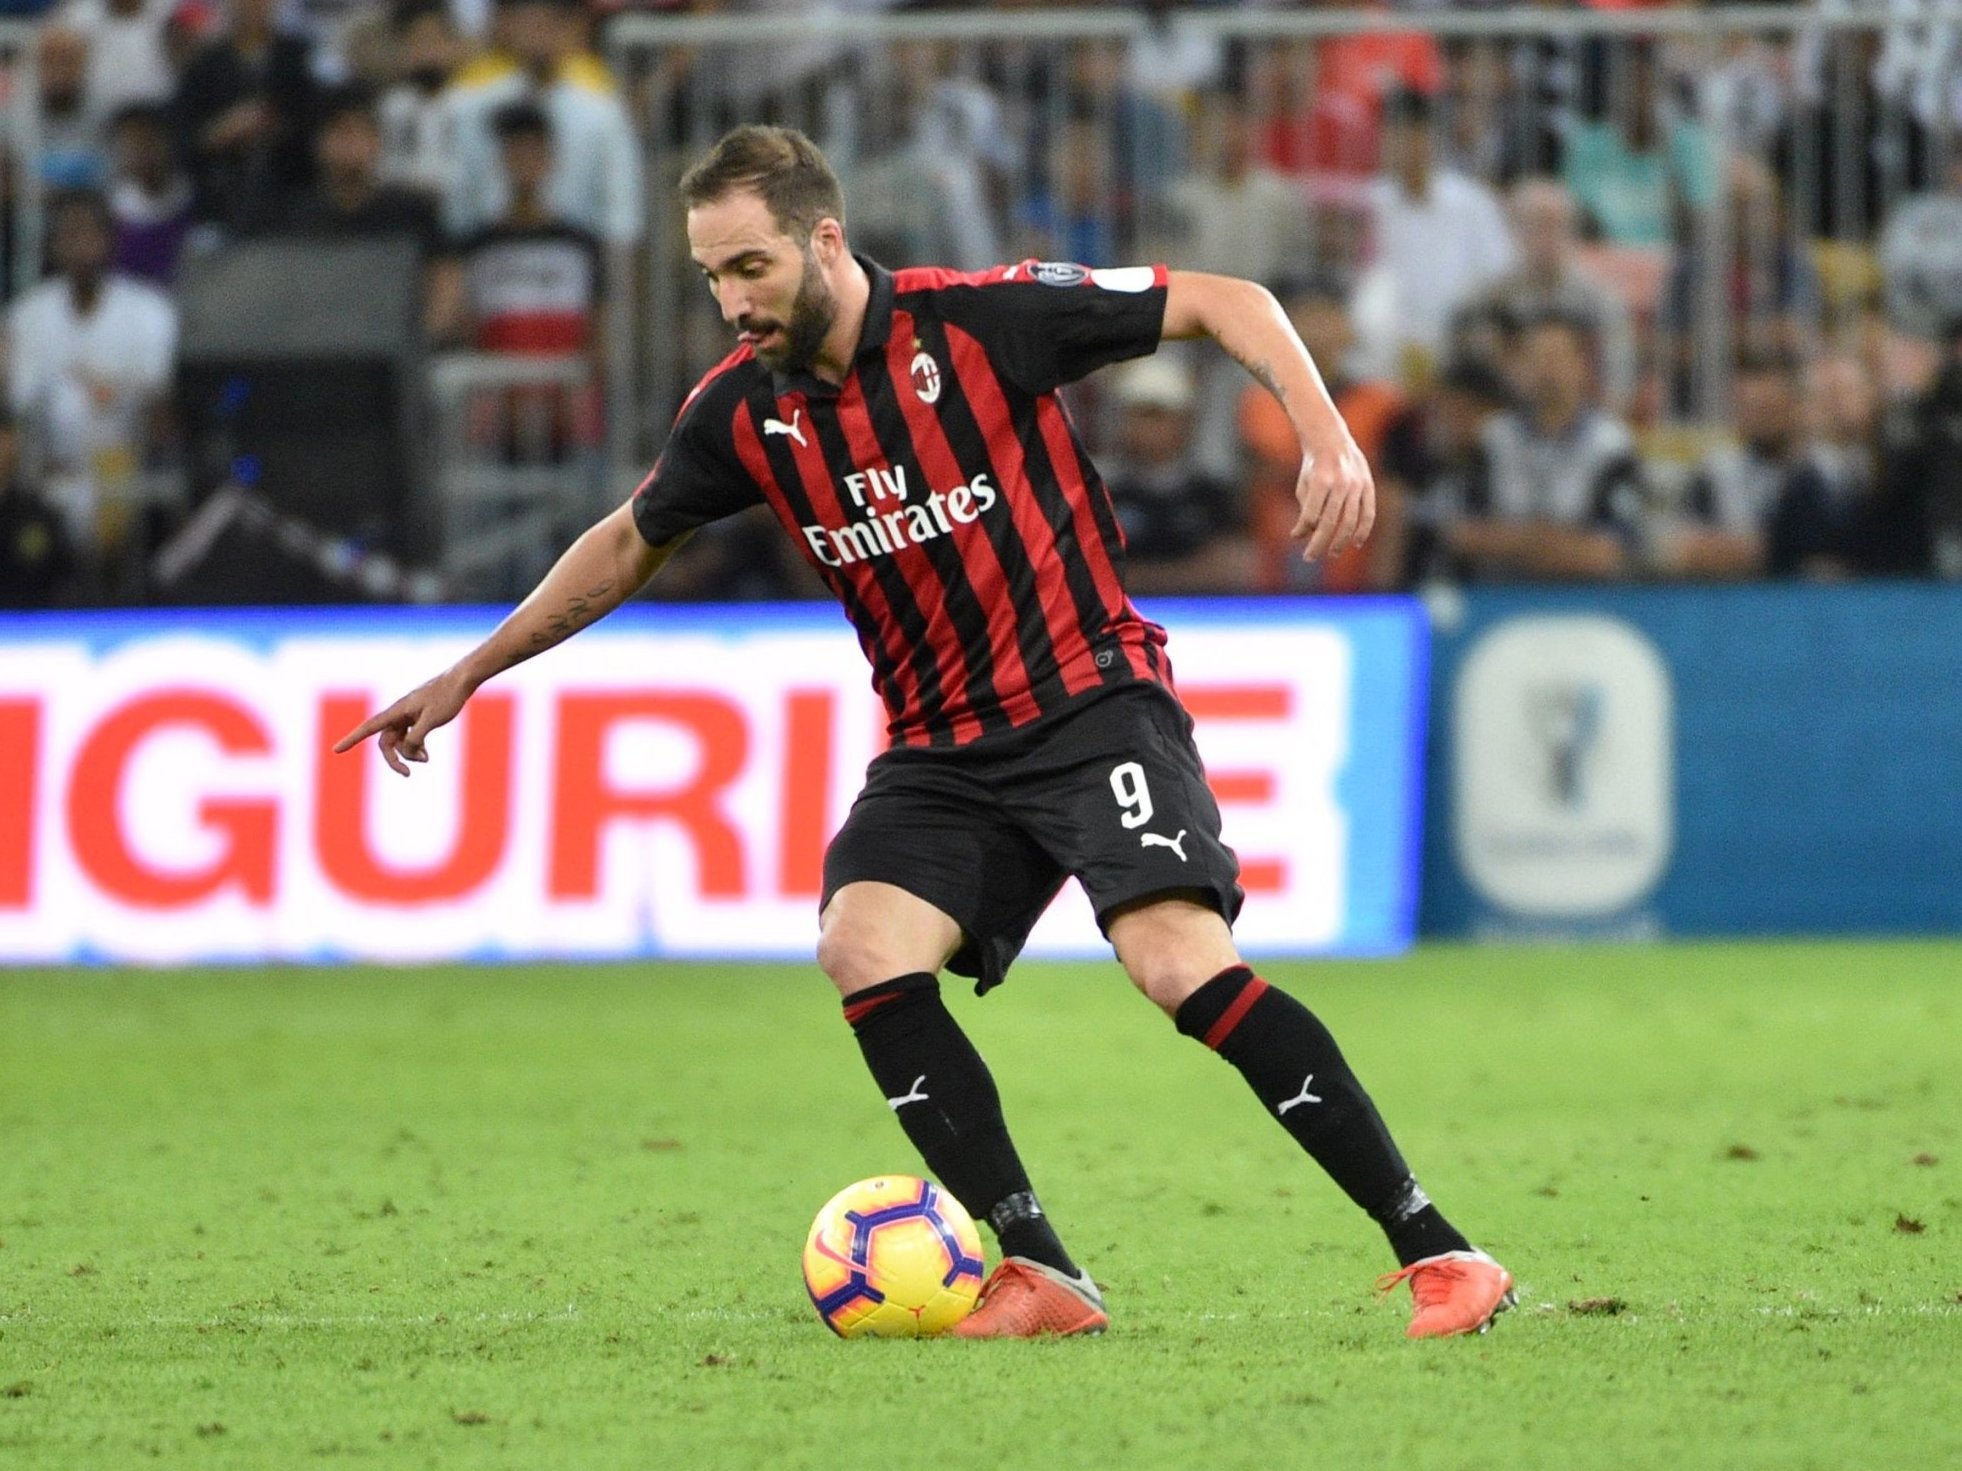 AC Milan’s Gonzalo Higuain controls the ball